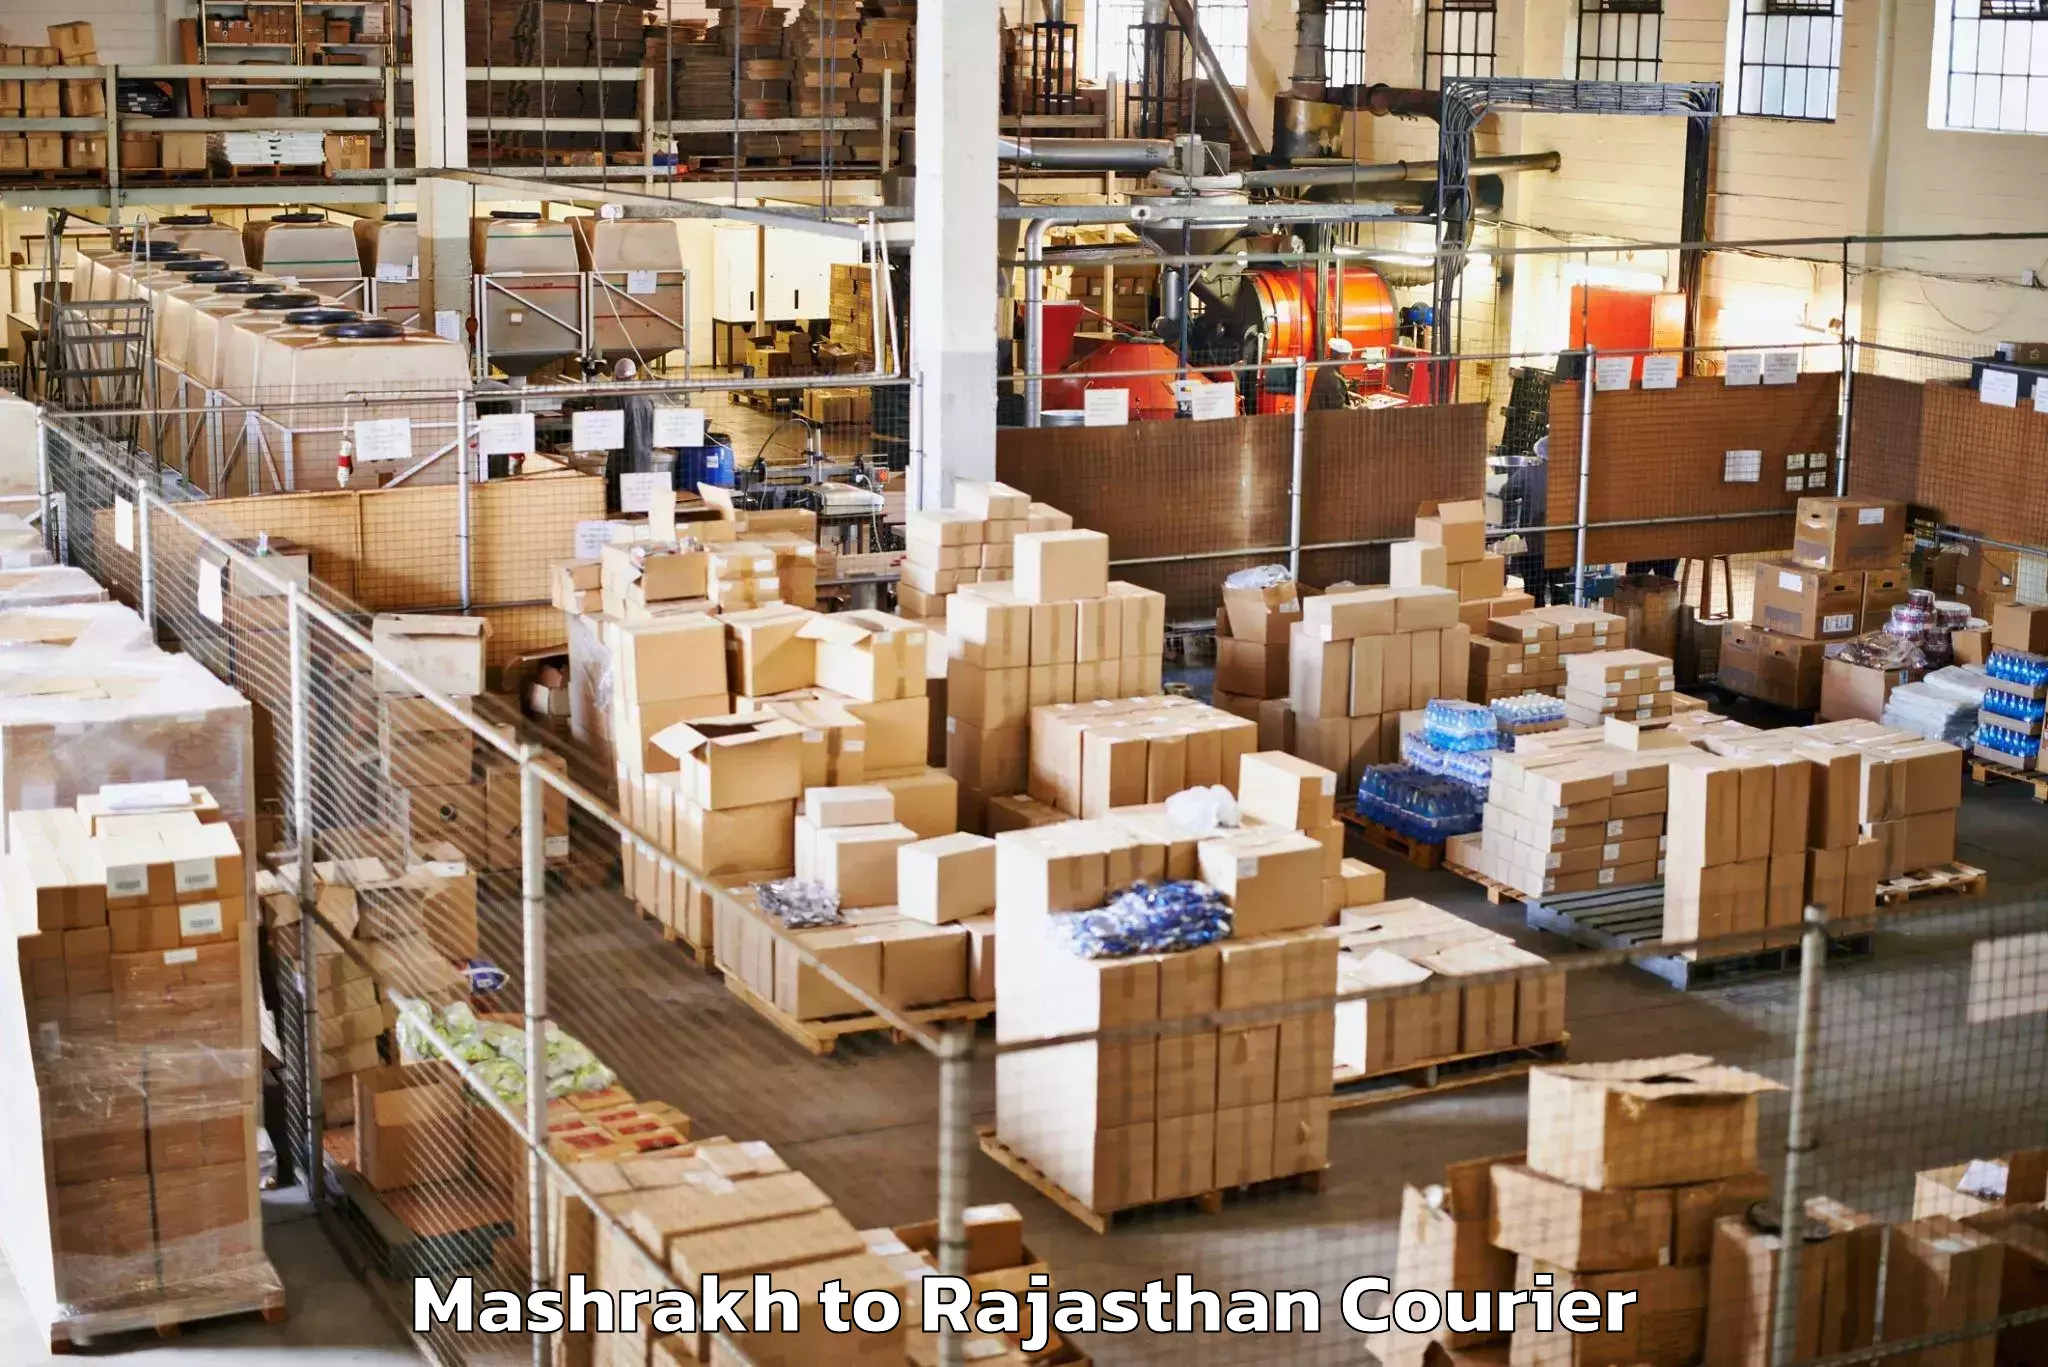 Baggage shipping service Mashrakh to Rajasthan